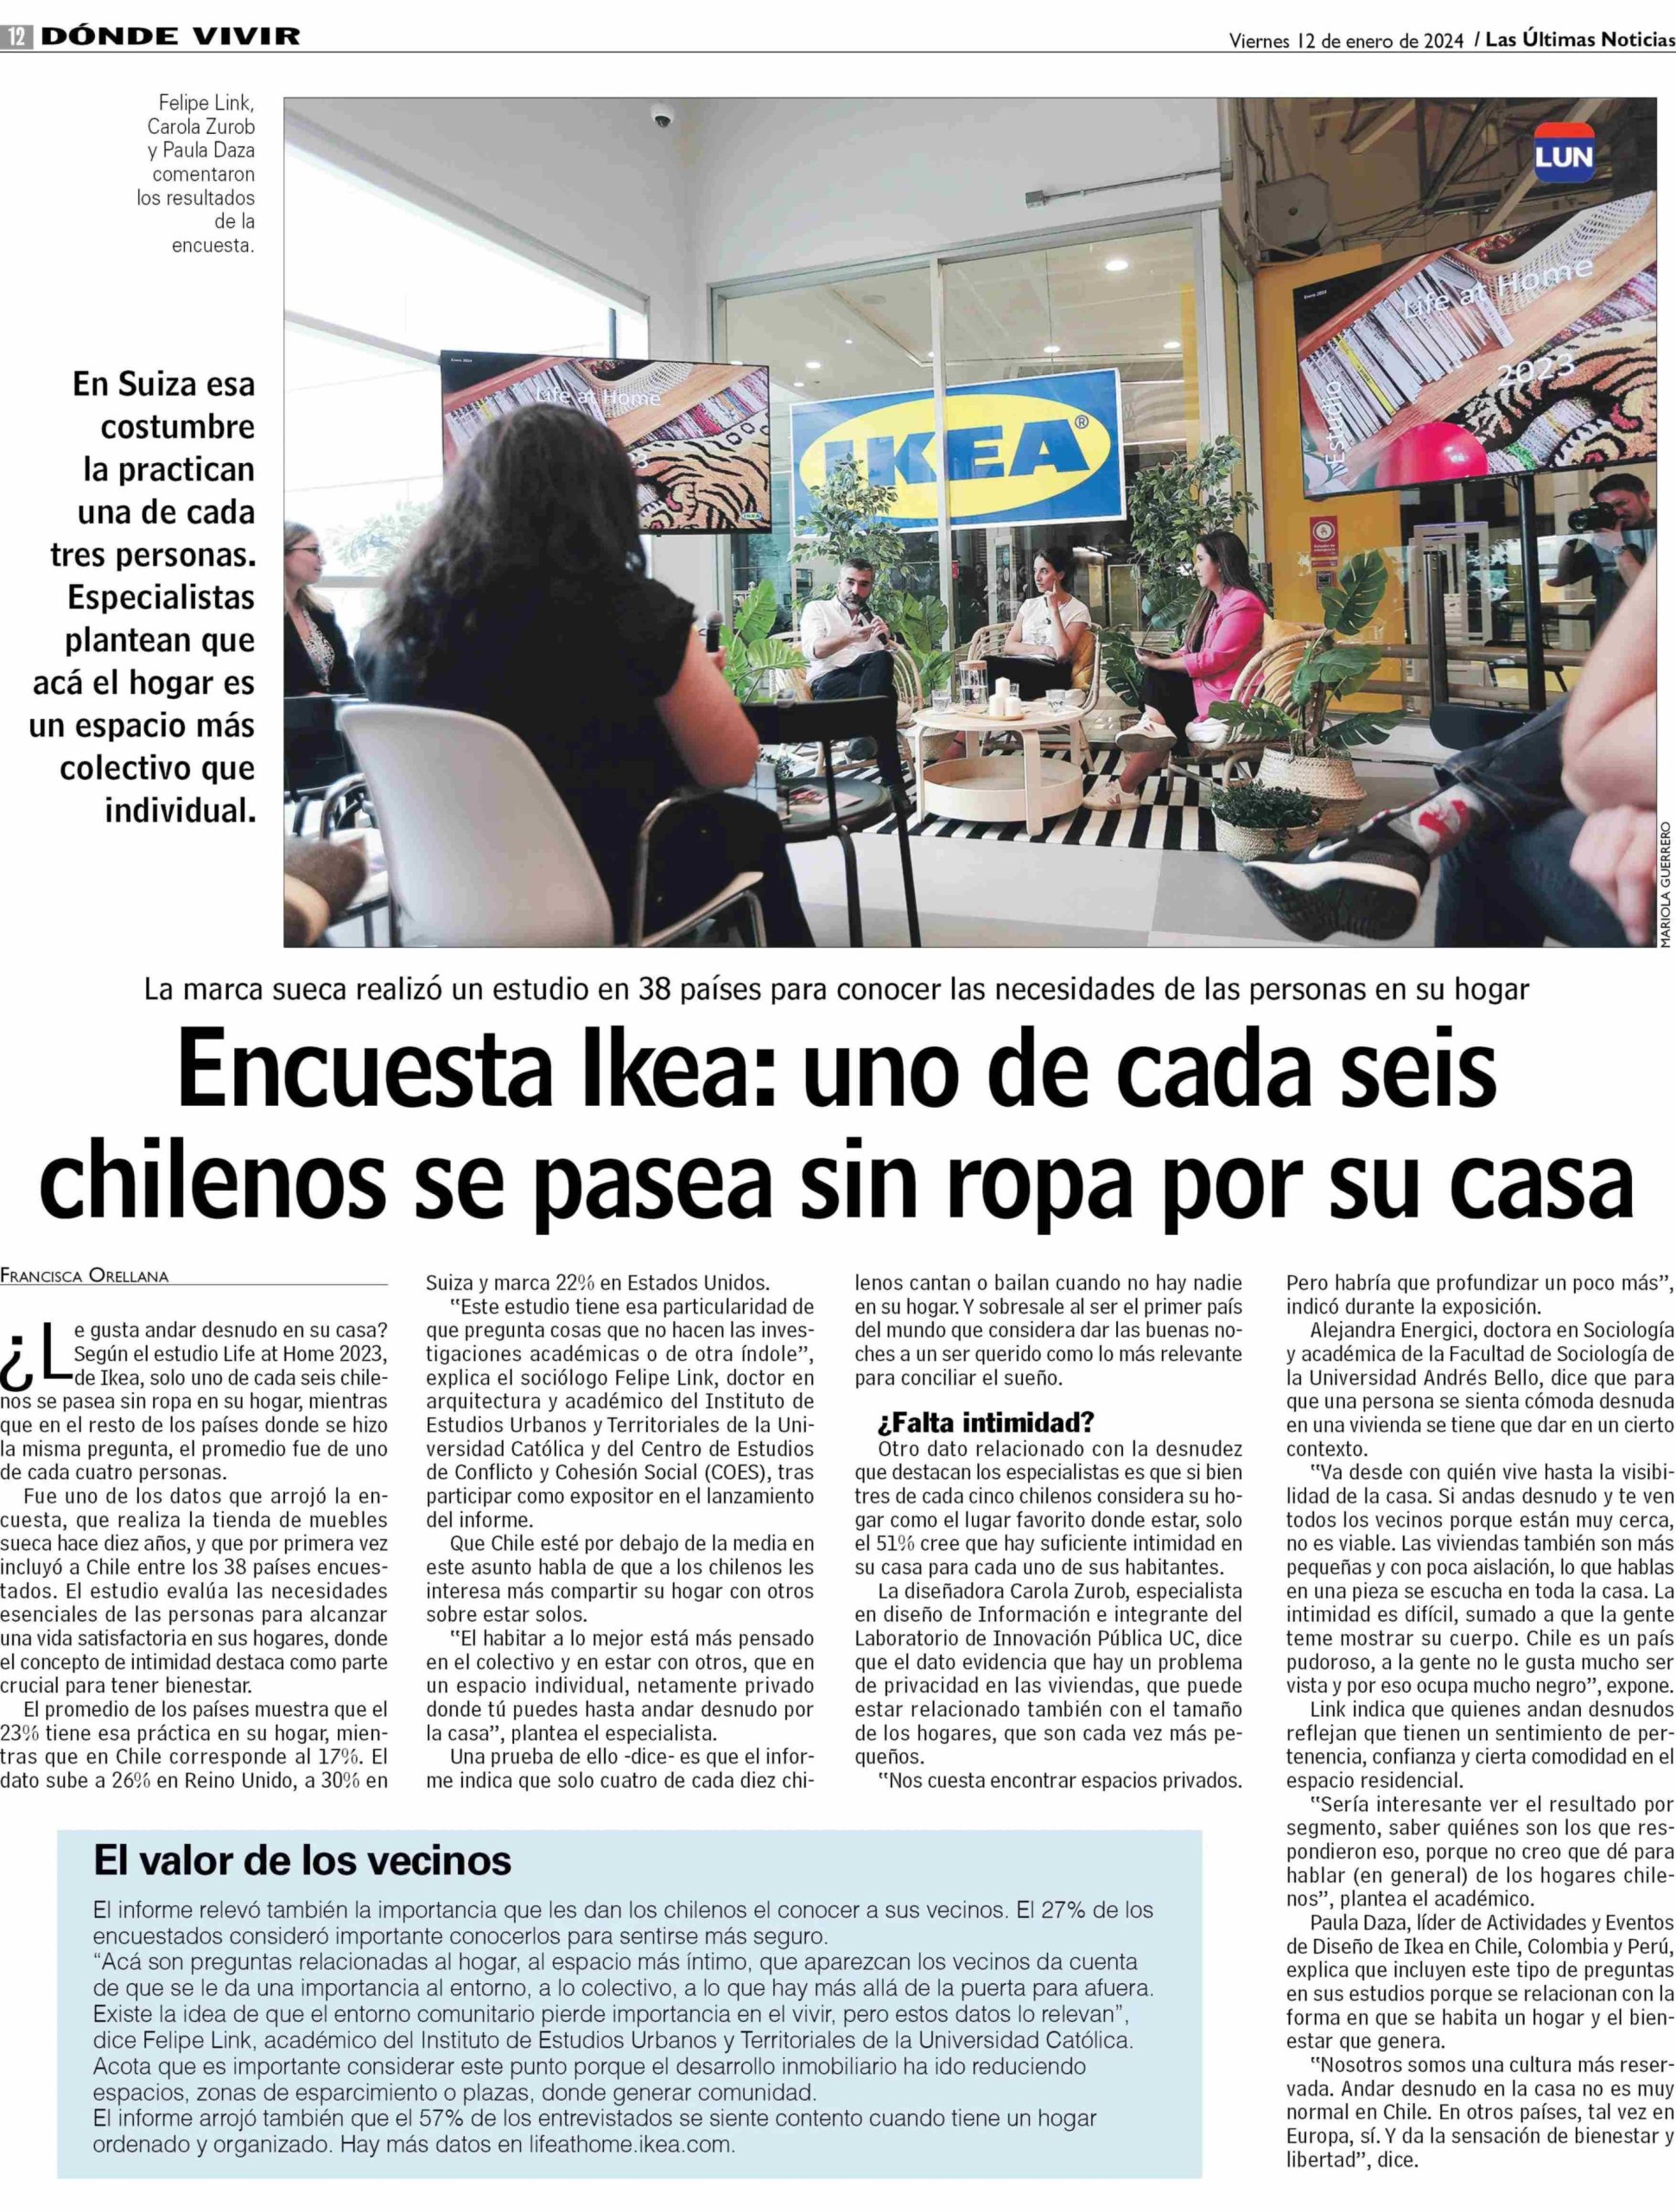 Ikea: uno de cada seis chilenos se pasea sin ropa por su casa